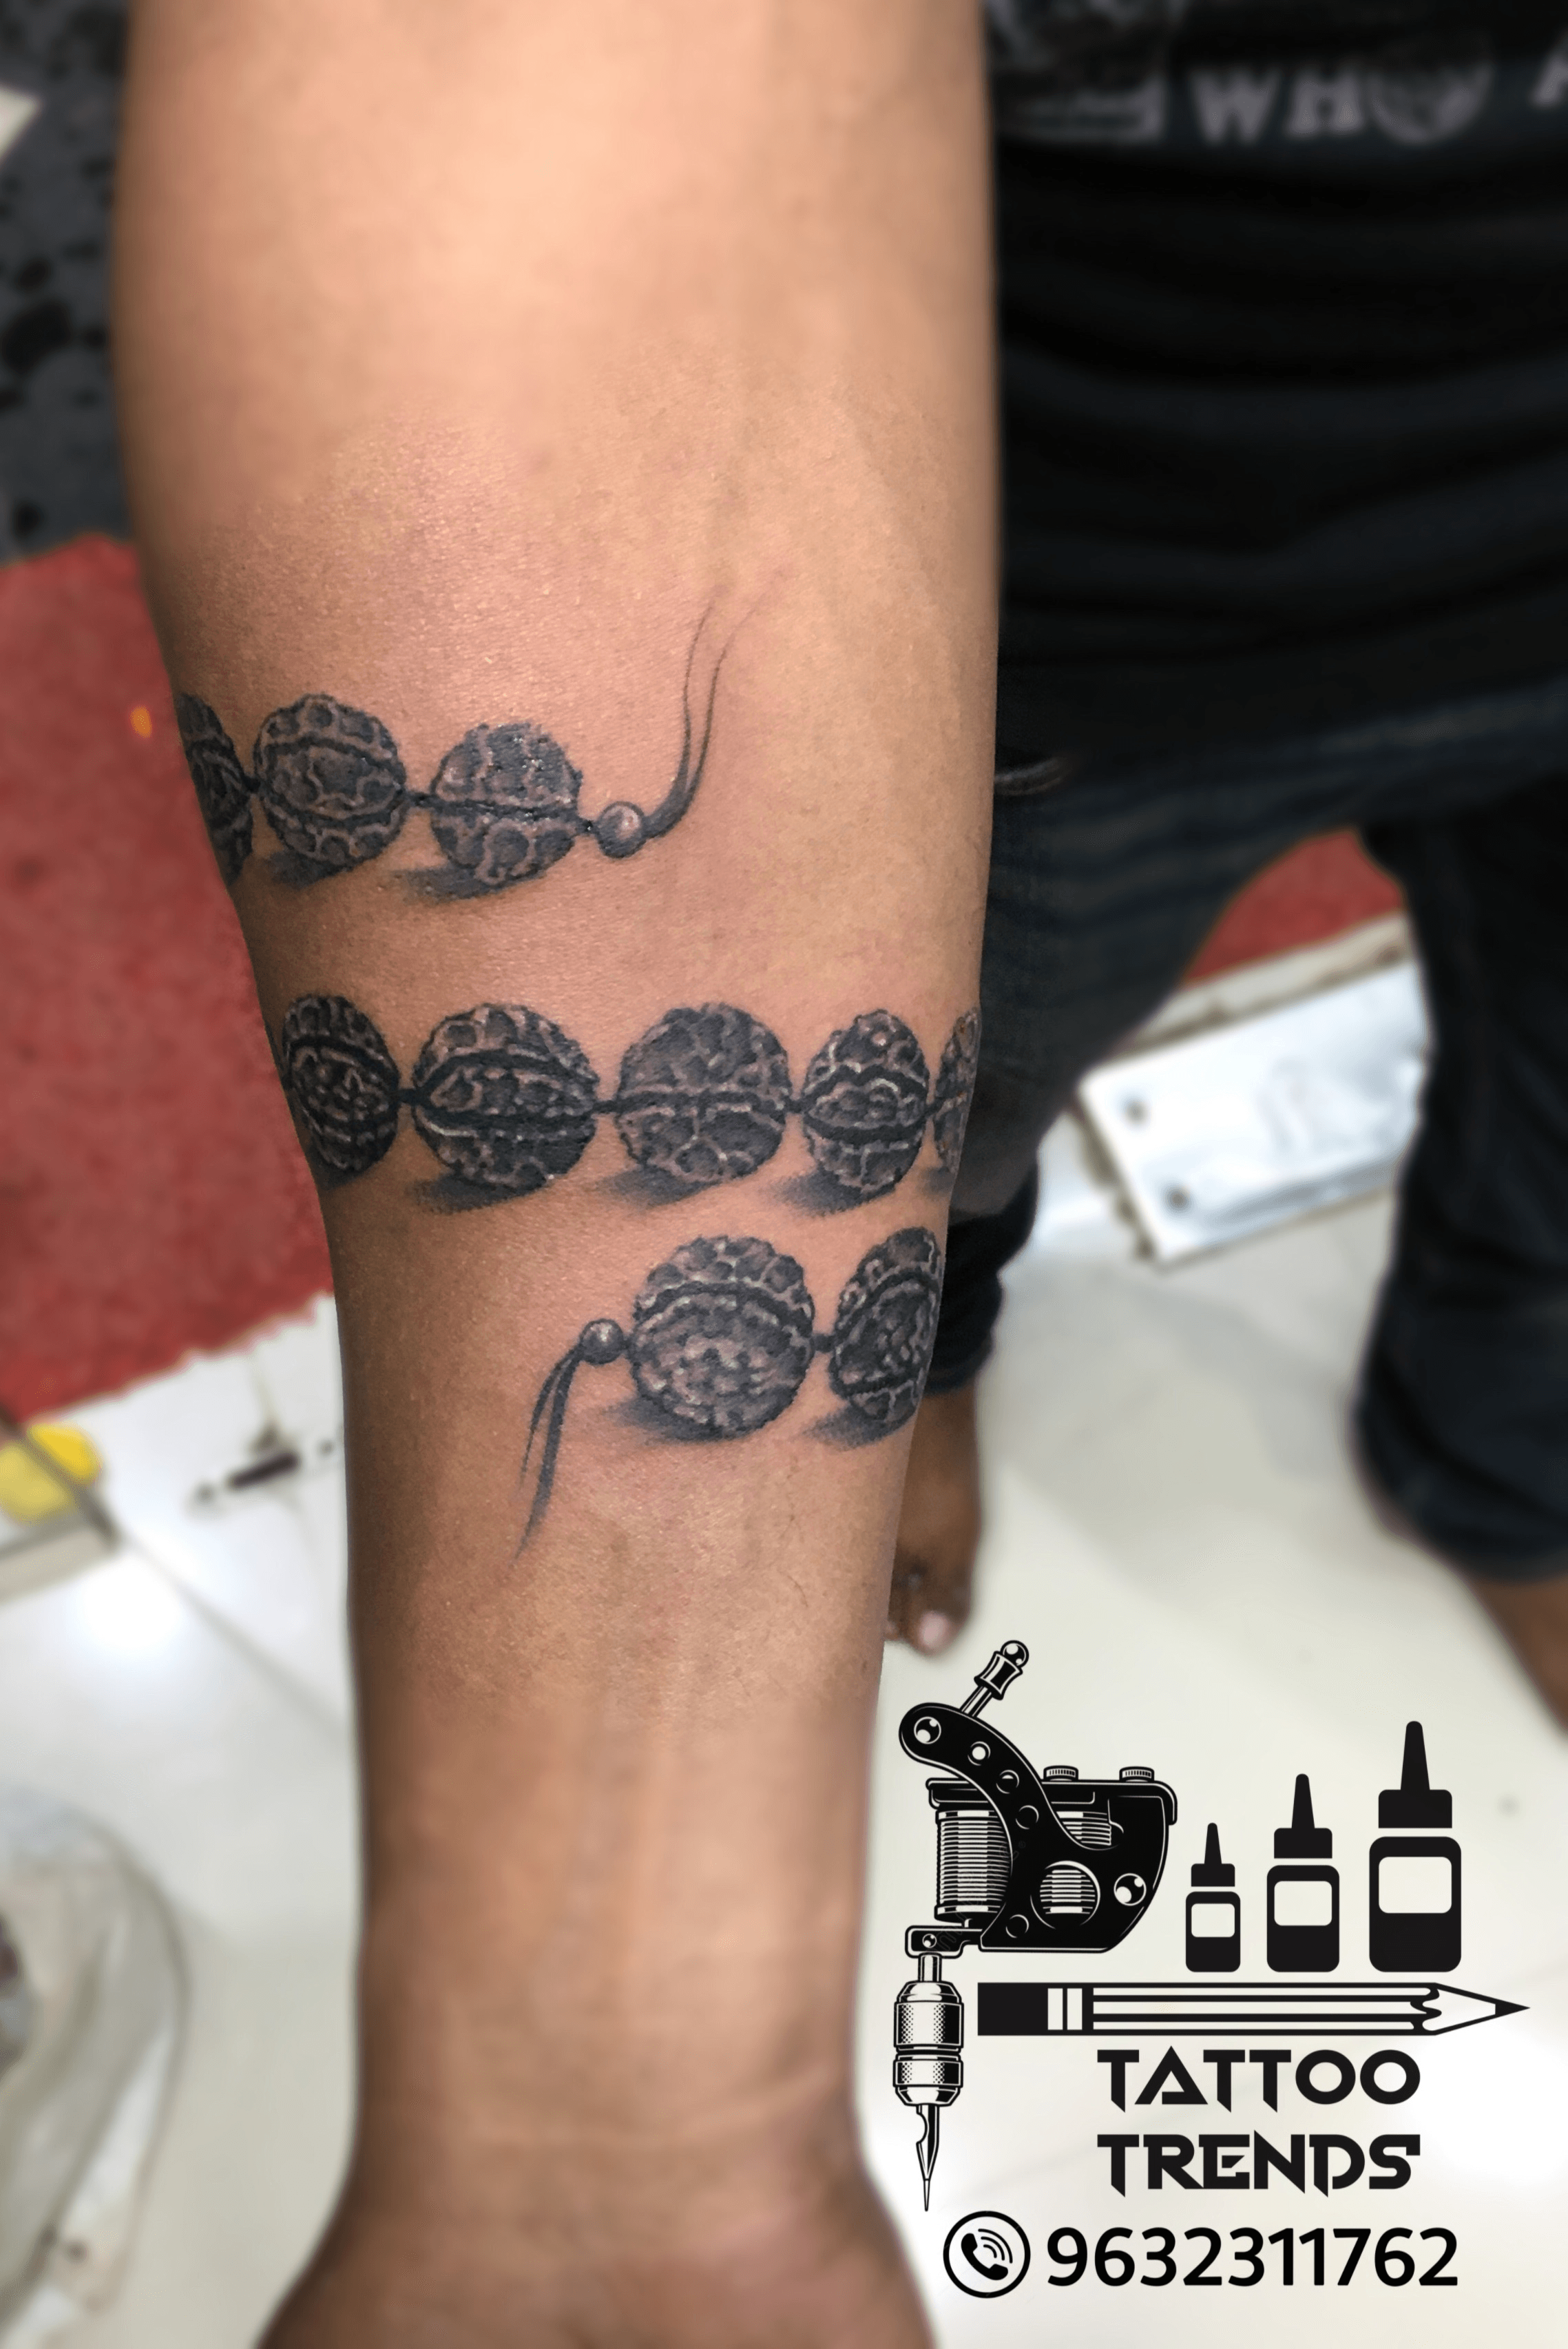 Trishul tattoo same tatto  Dev Tattoos  Tattoo Artist in New Delhi India